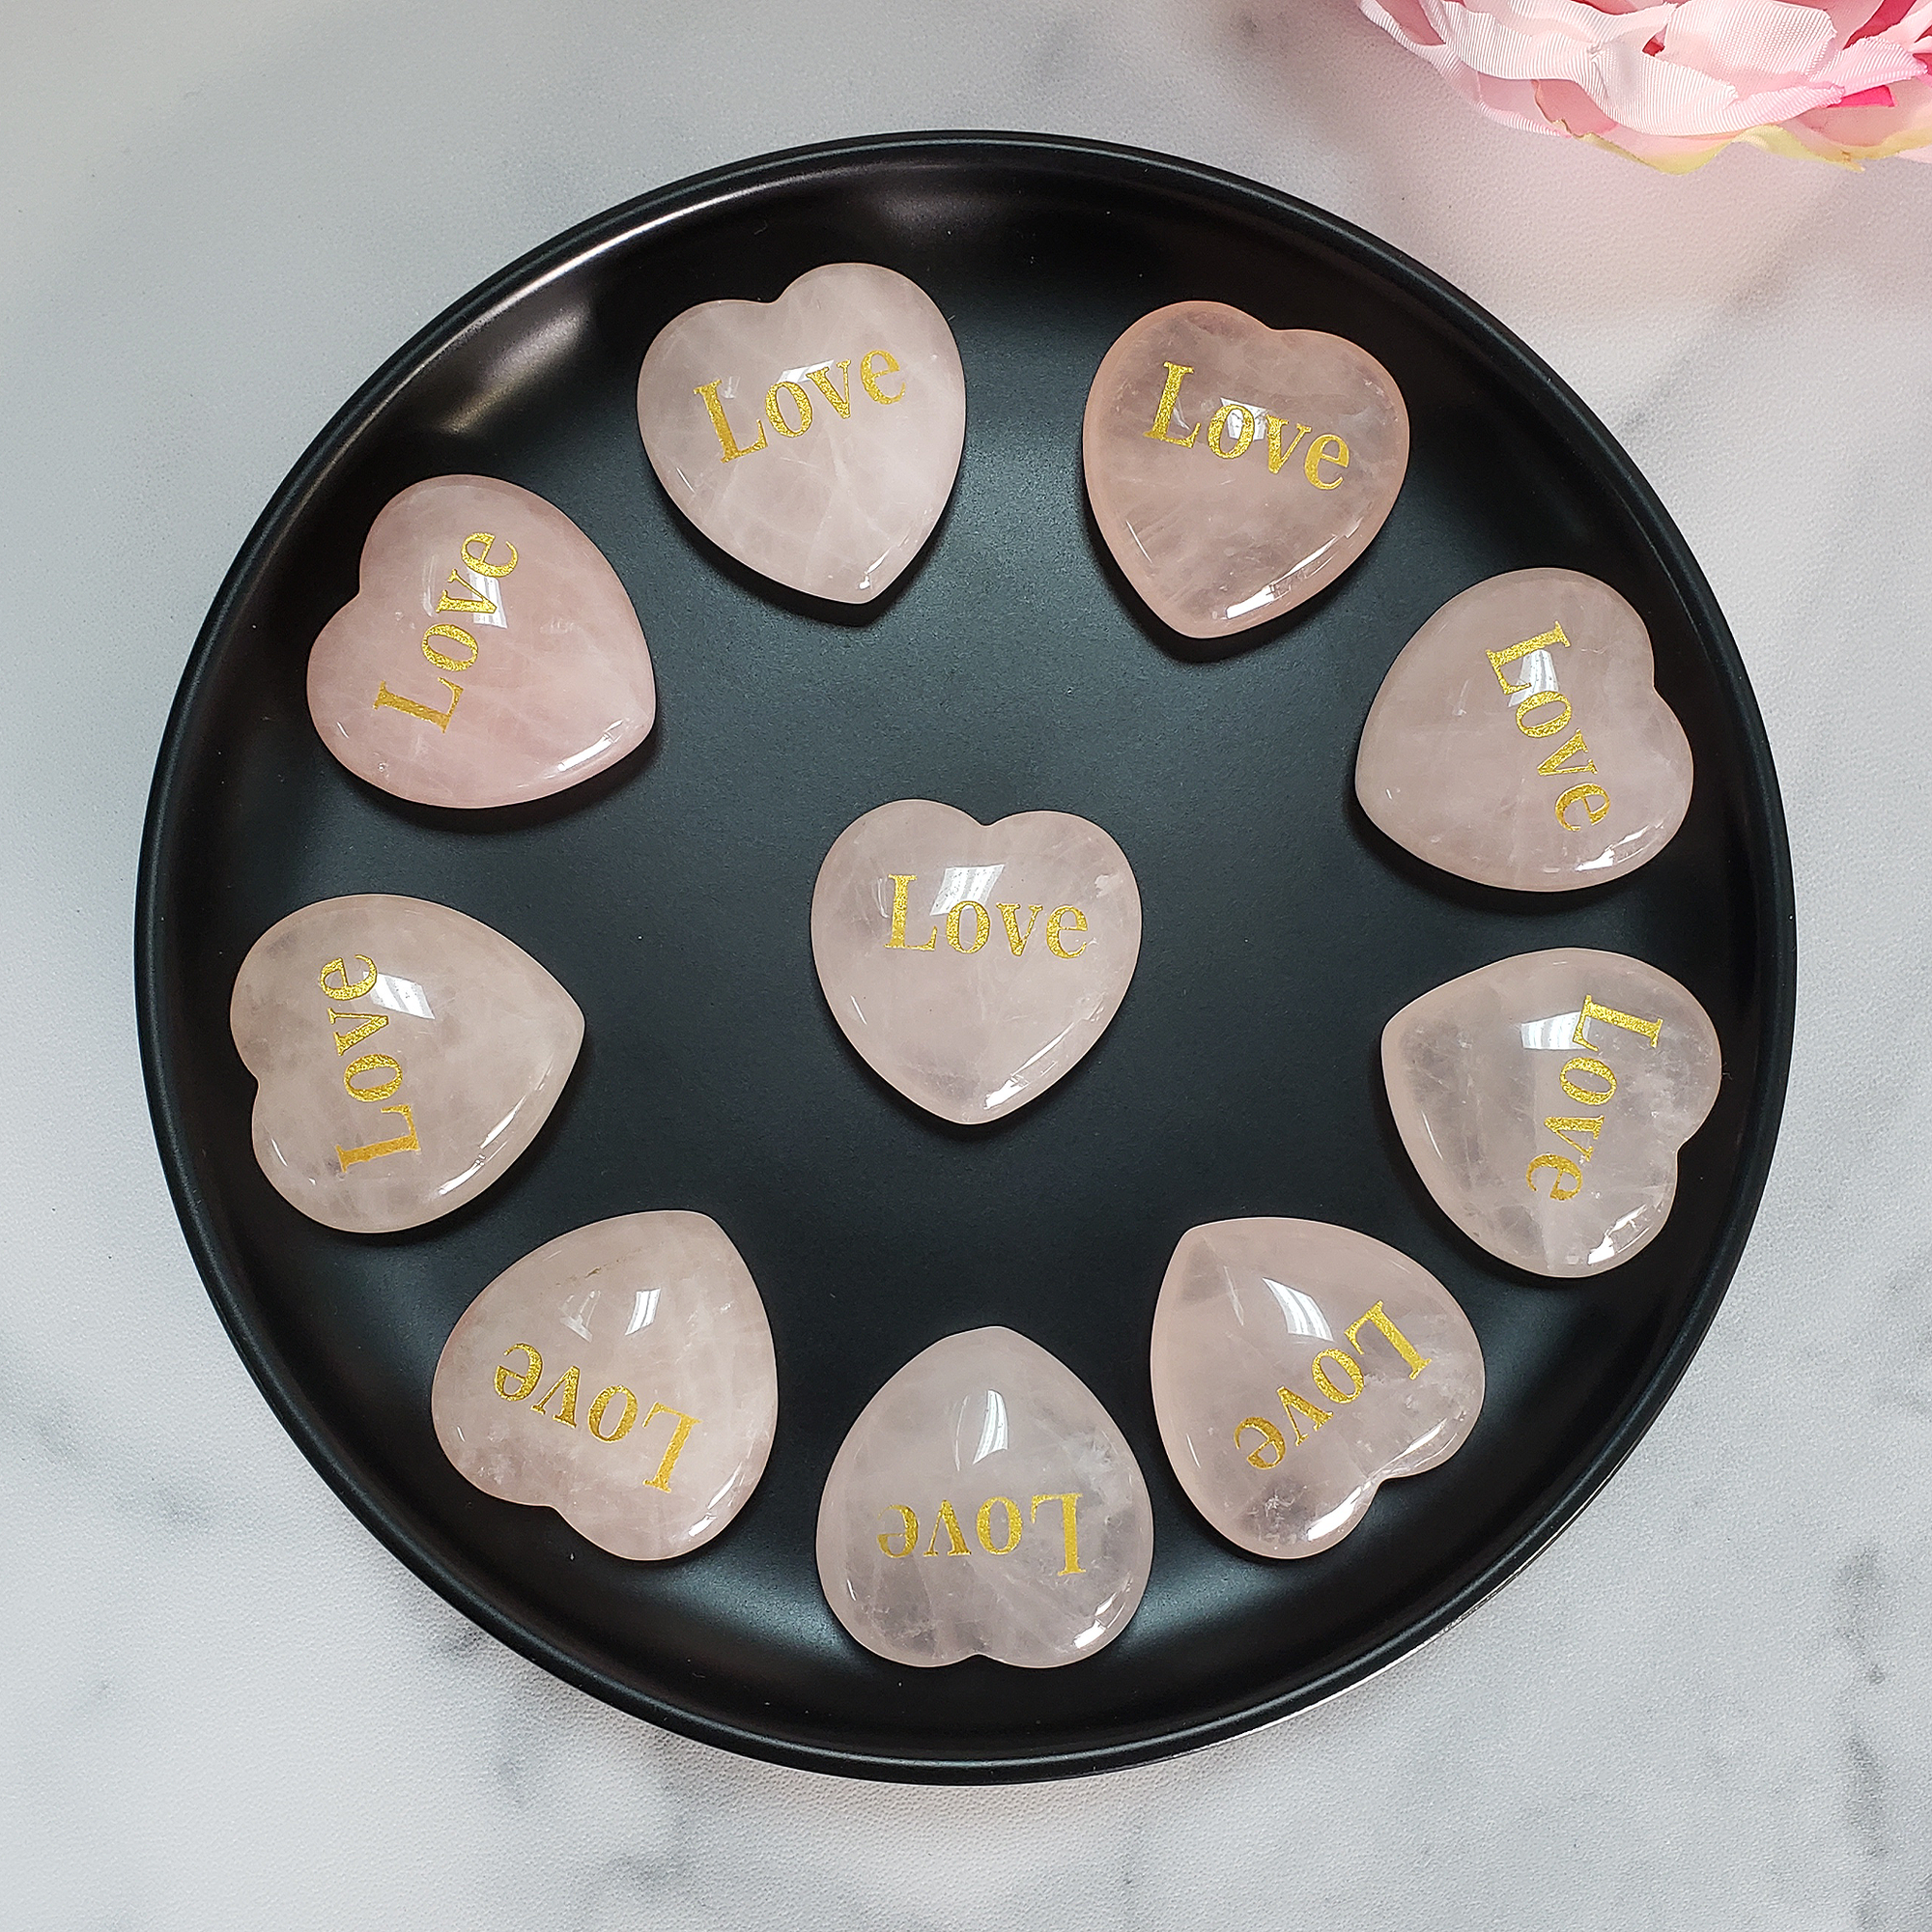 Rose Quartz Crystal Natural Gemstone Heart Carving | Engraved Love Affirmation - Rose Quartz Crystal Hearts on Black Ceramic Bowl